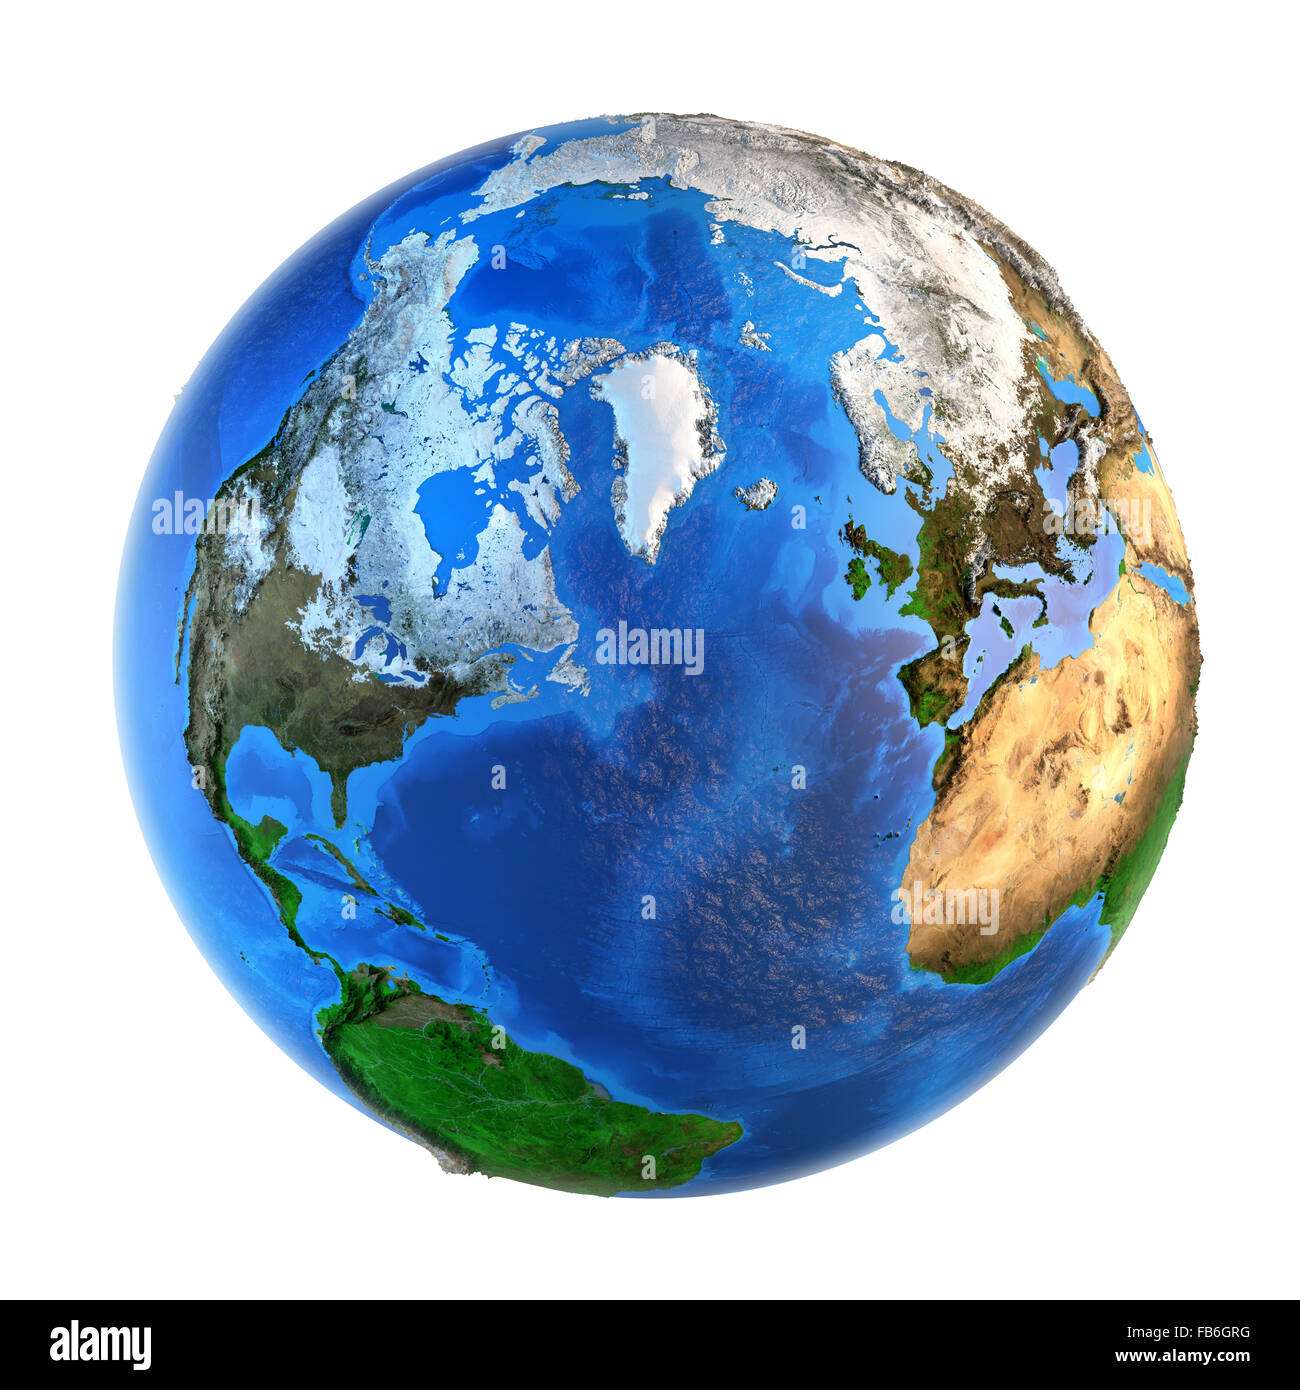 Immagine dettagliata della Terra e dei suoi landforms da una prospettiva nordica, isolato su bianco. Gli elementi di questa immagine arredate Foto Stock